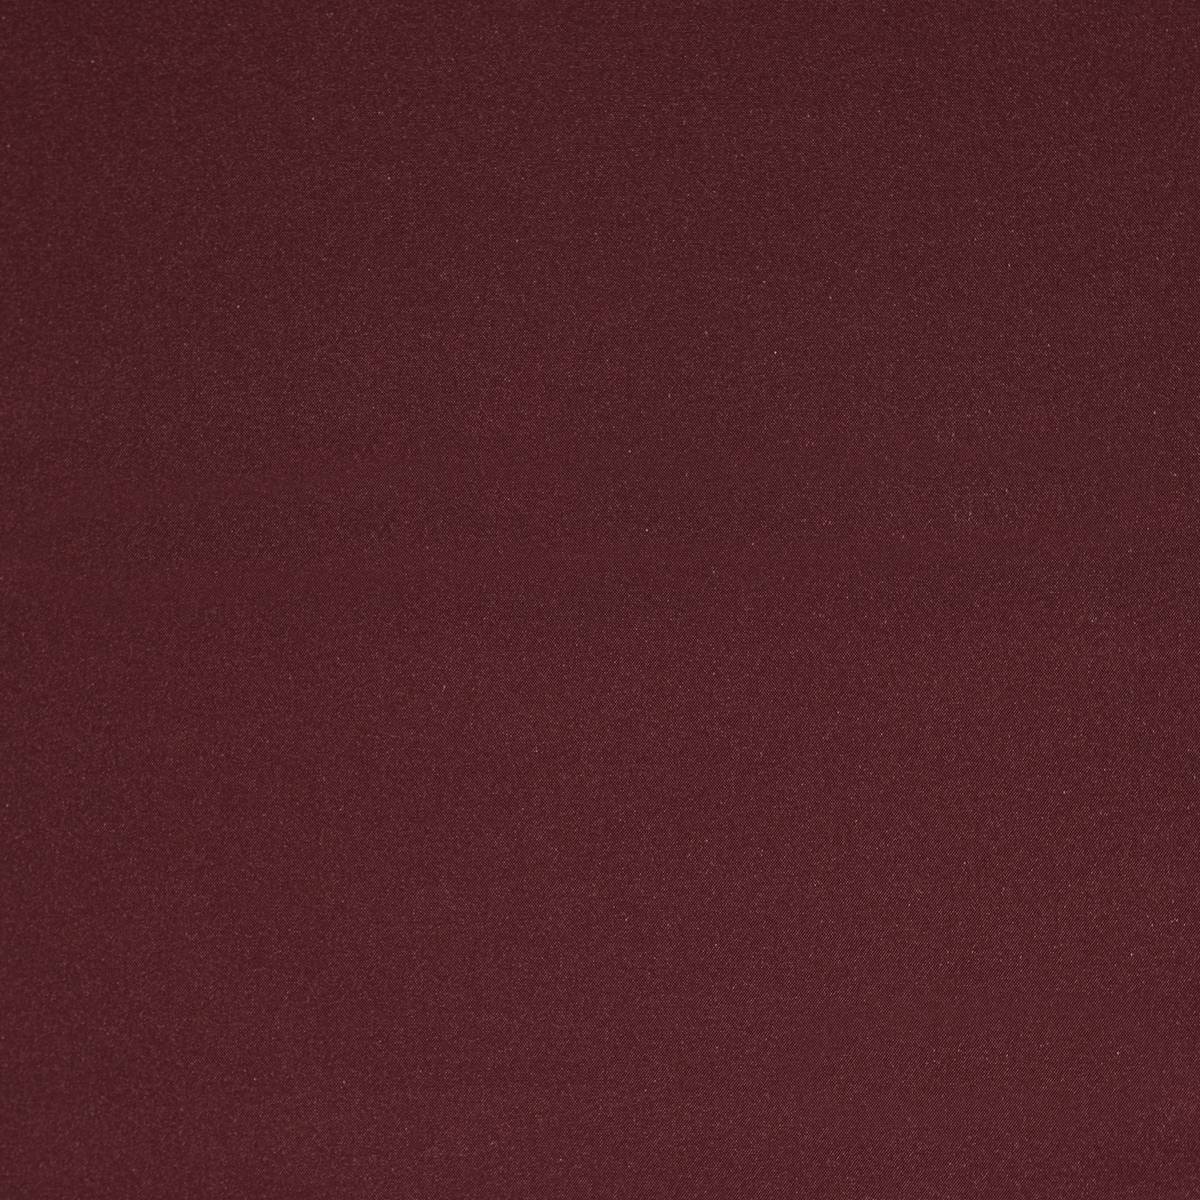 Portobello Wide Bordeaux Fabric by Prestigious Textiles